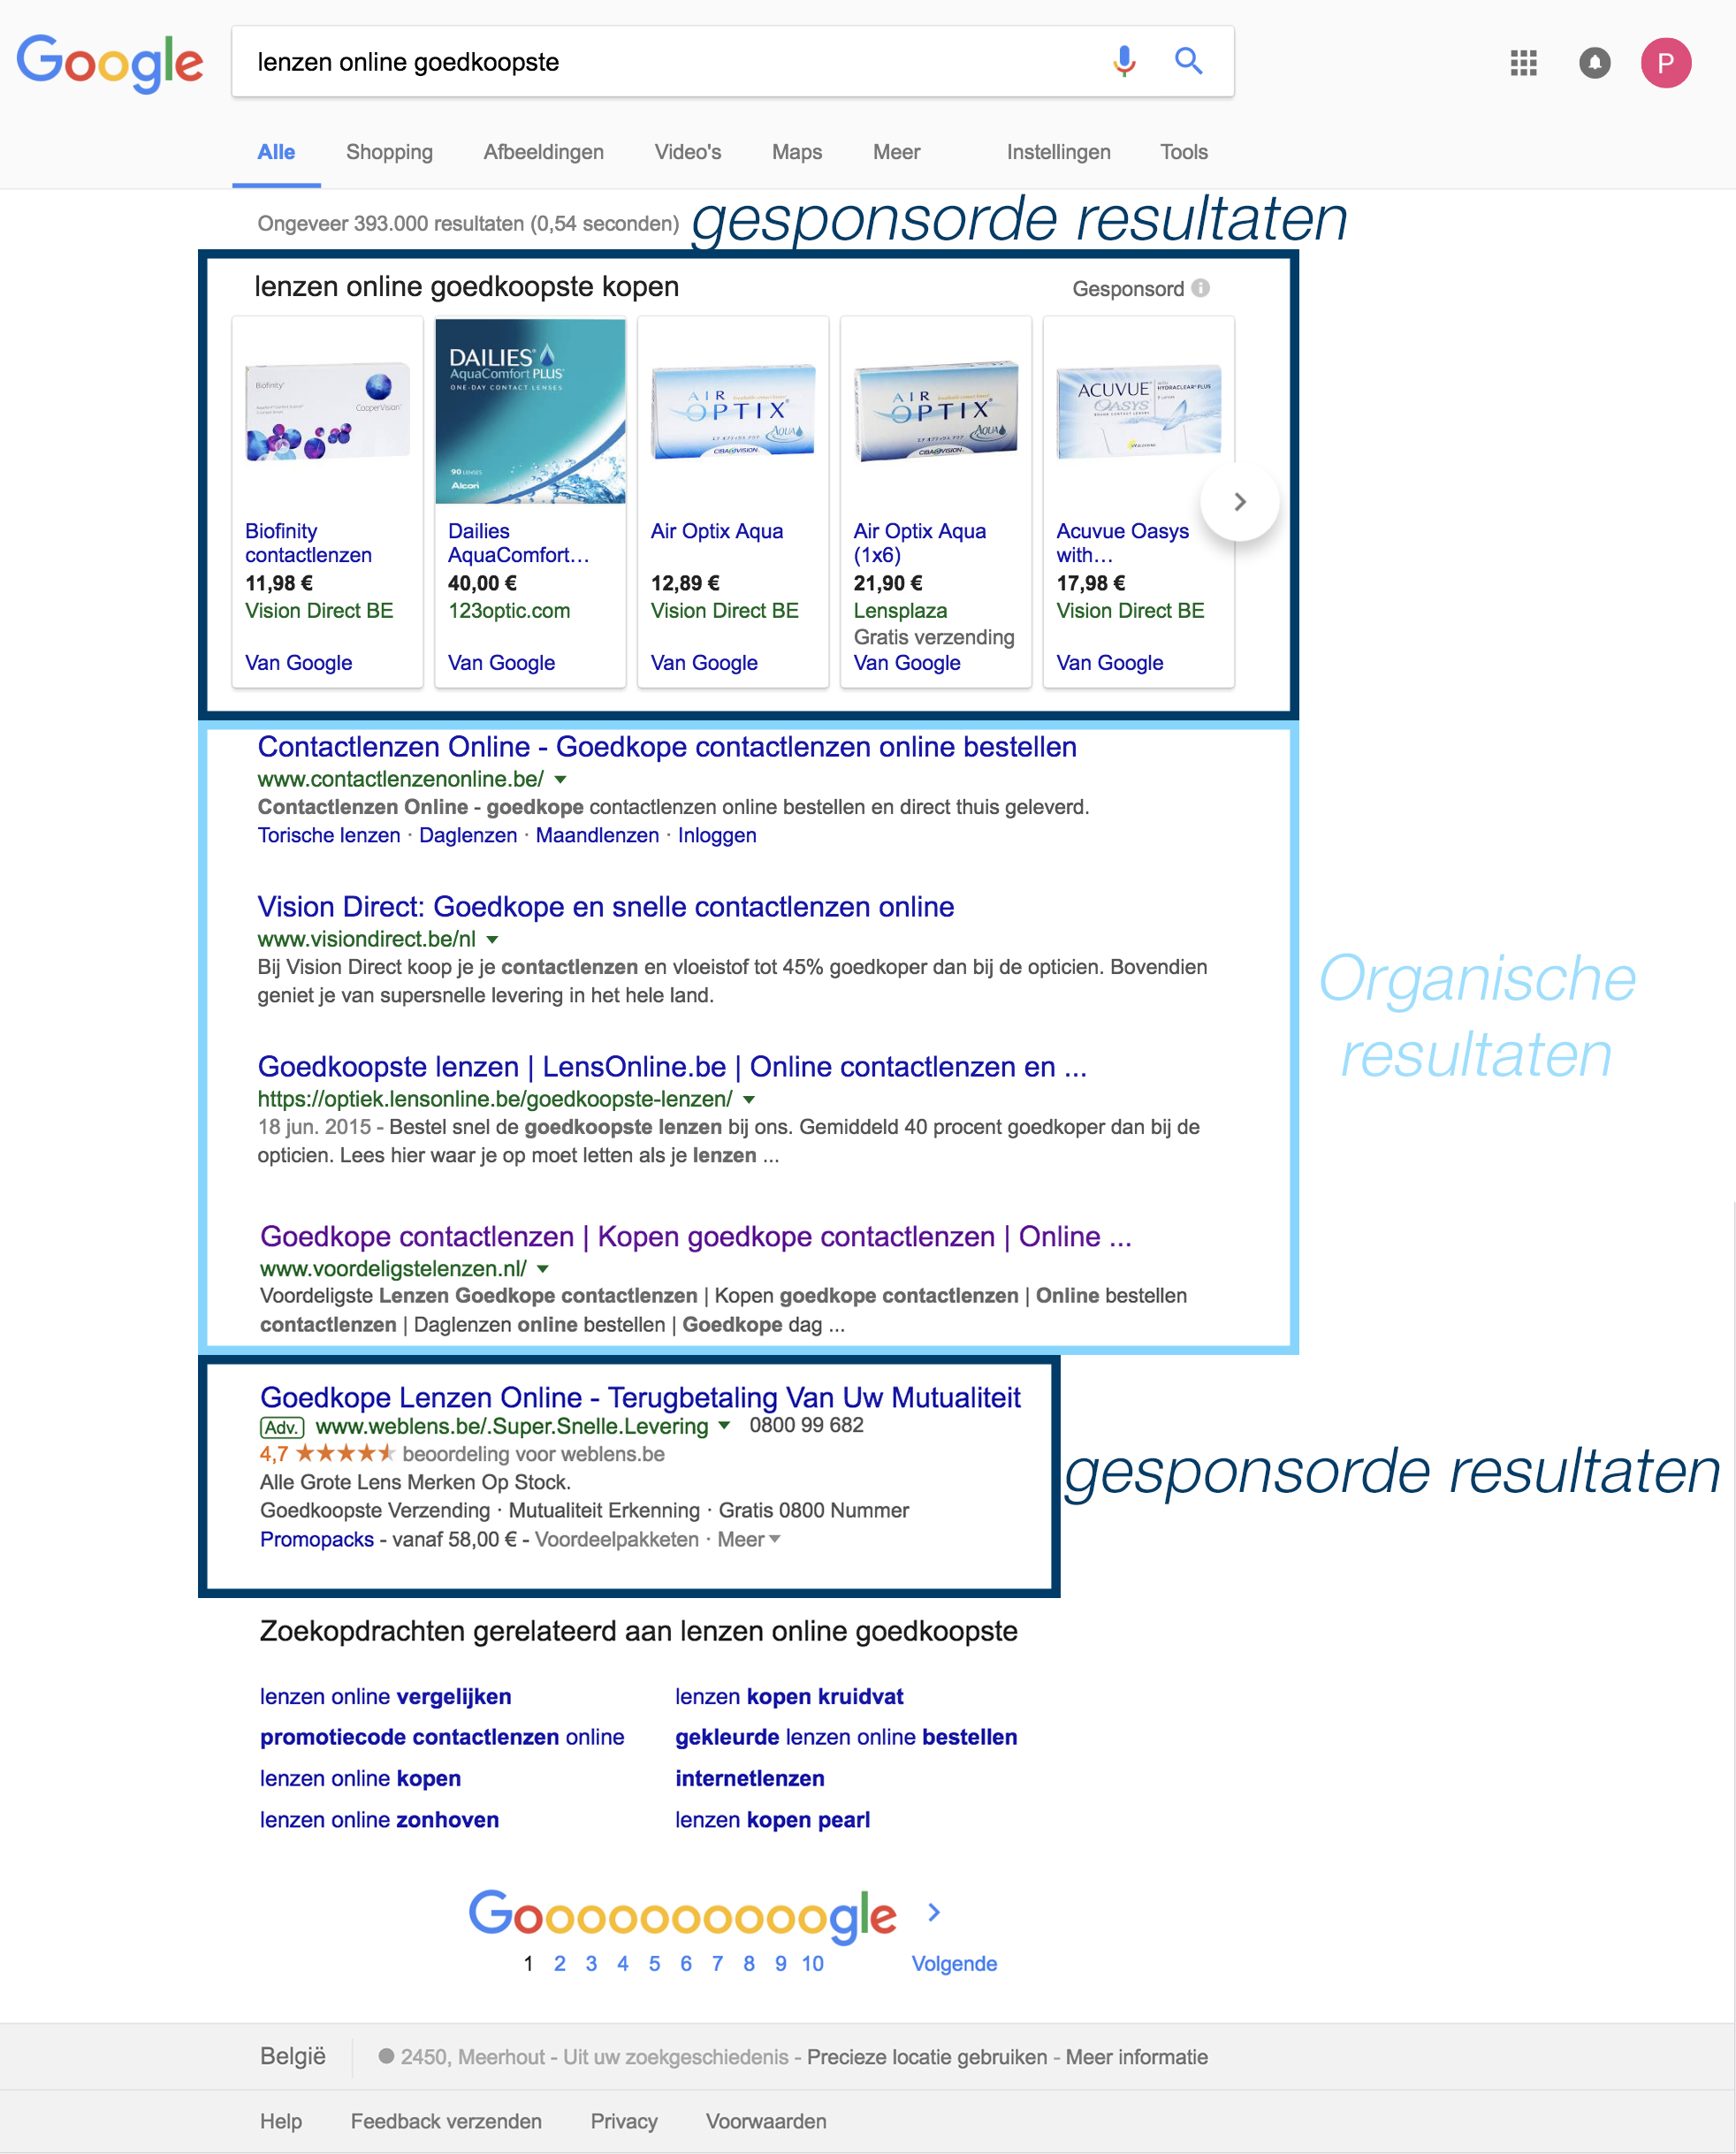 Een voorbeeld van organische en gesponsorde zoekresultaten in Google